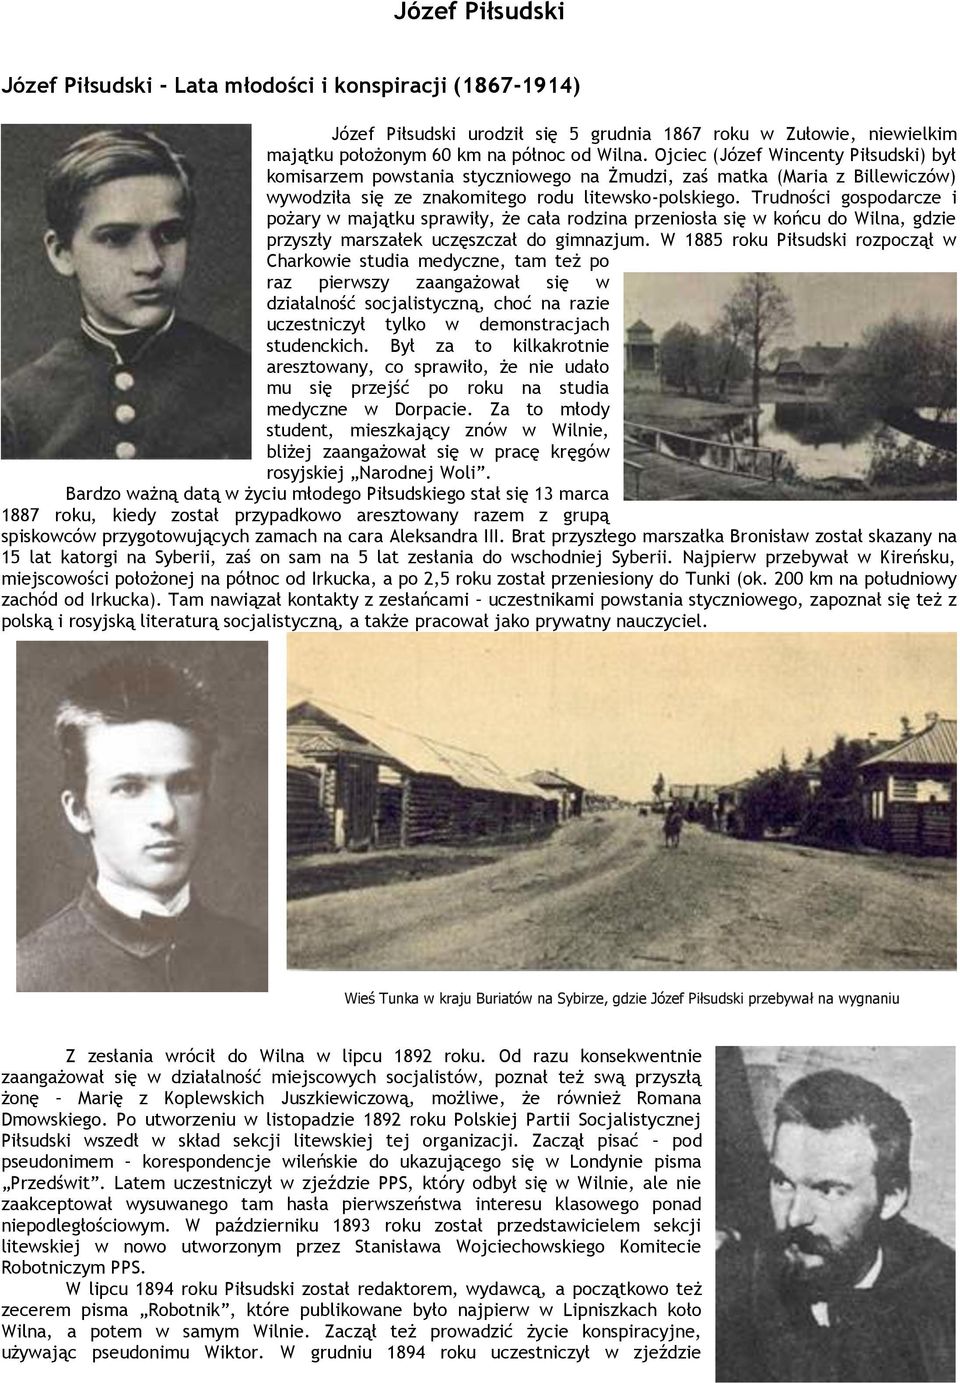 Trudności gospodarcze i pożary w majątku sprawiły, że cała rodzina przeniosła się w końcu do Wilna, gdzie przyszły marszałek uczęszczał do gimnazjum.